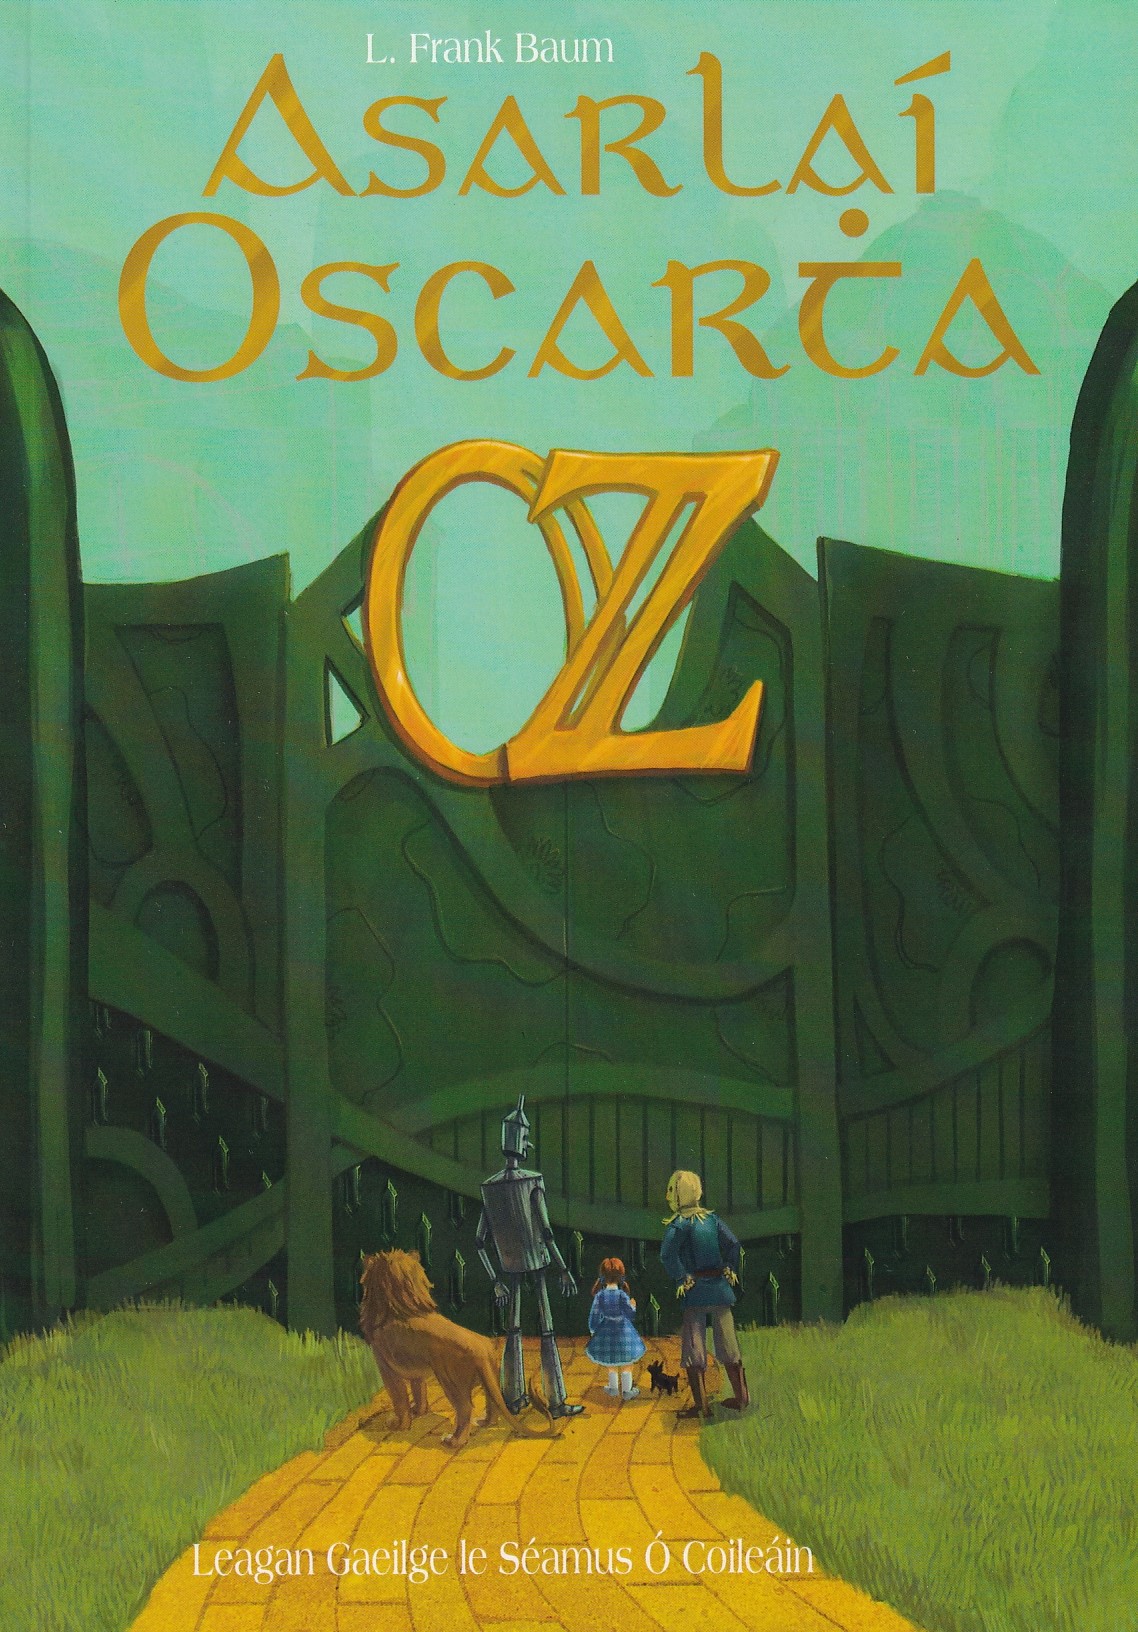 Asarlaí Oscartha Oz by Séamus Ó Coileáin